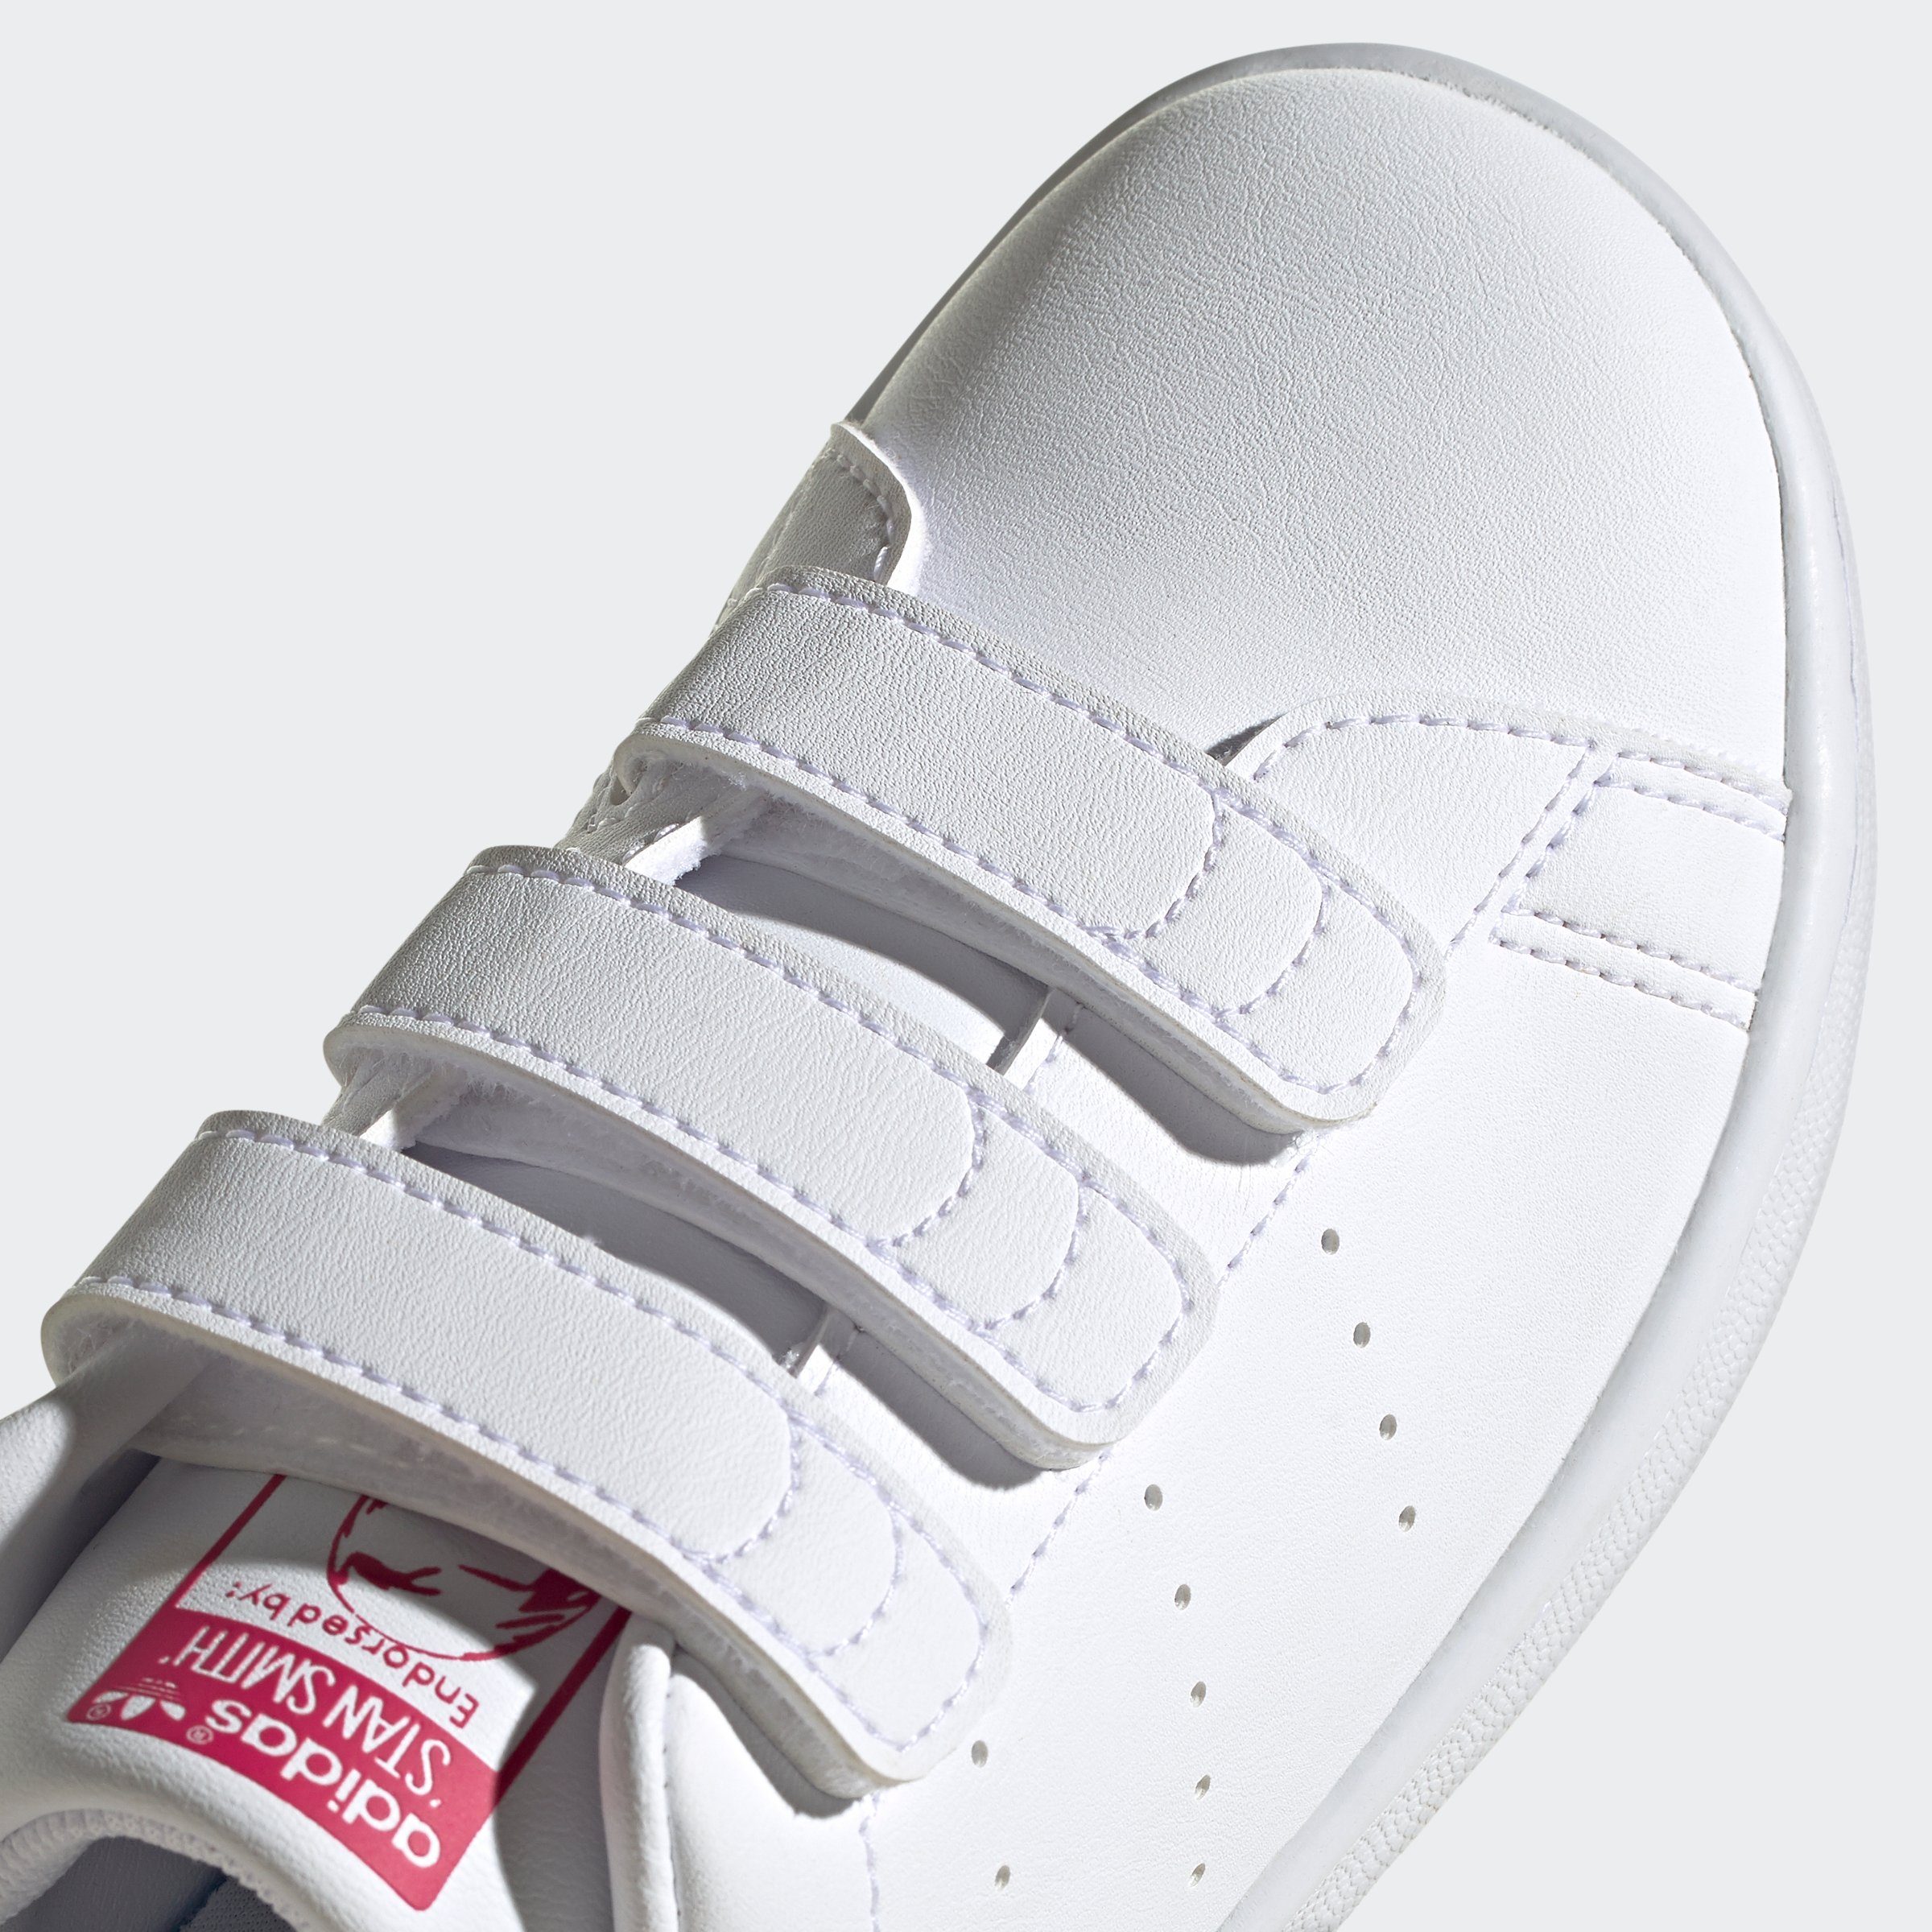 Pink adidas Sneaker SMITH White Klettverschluss STAN Bold / White Cloud / Cloud Originals mit